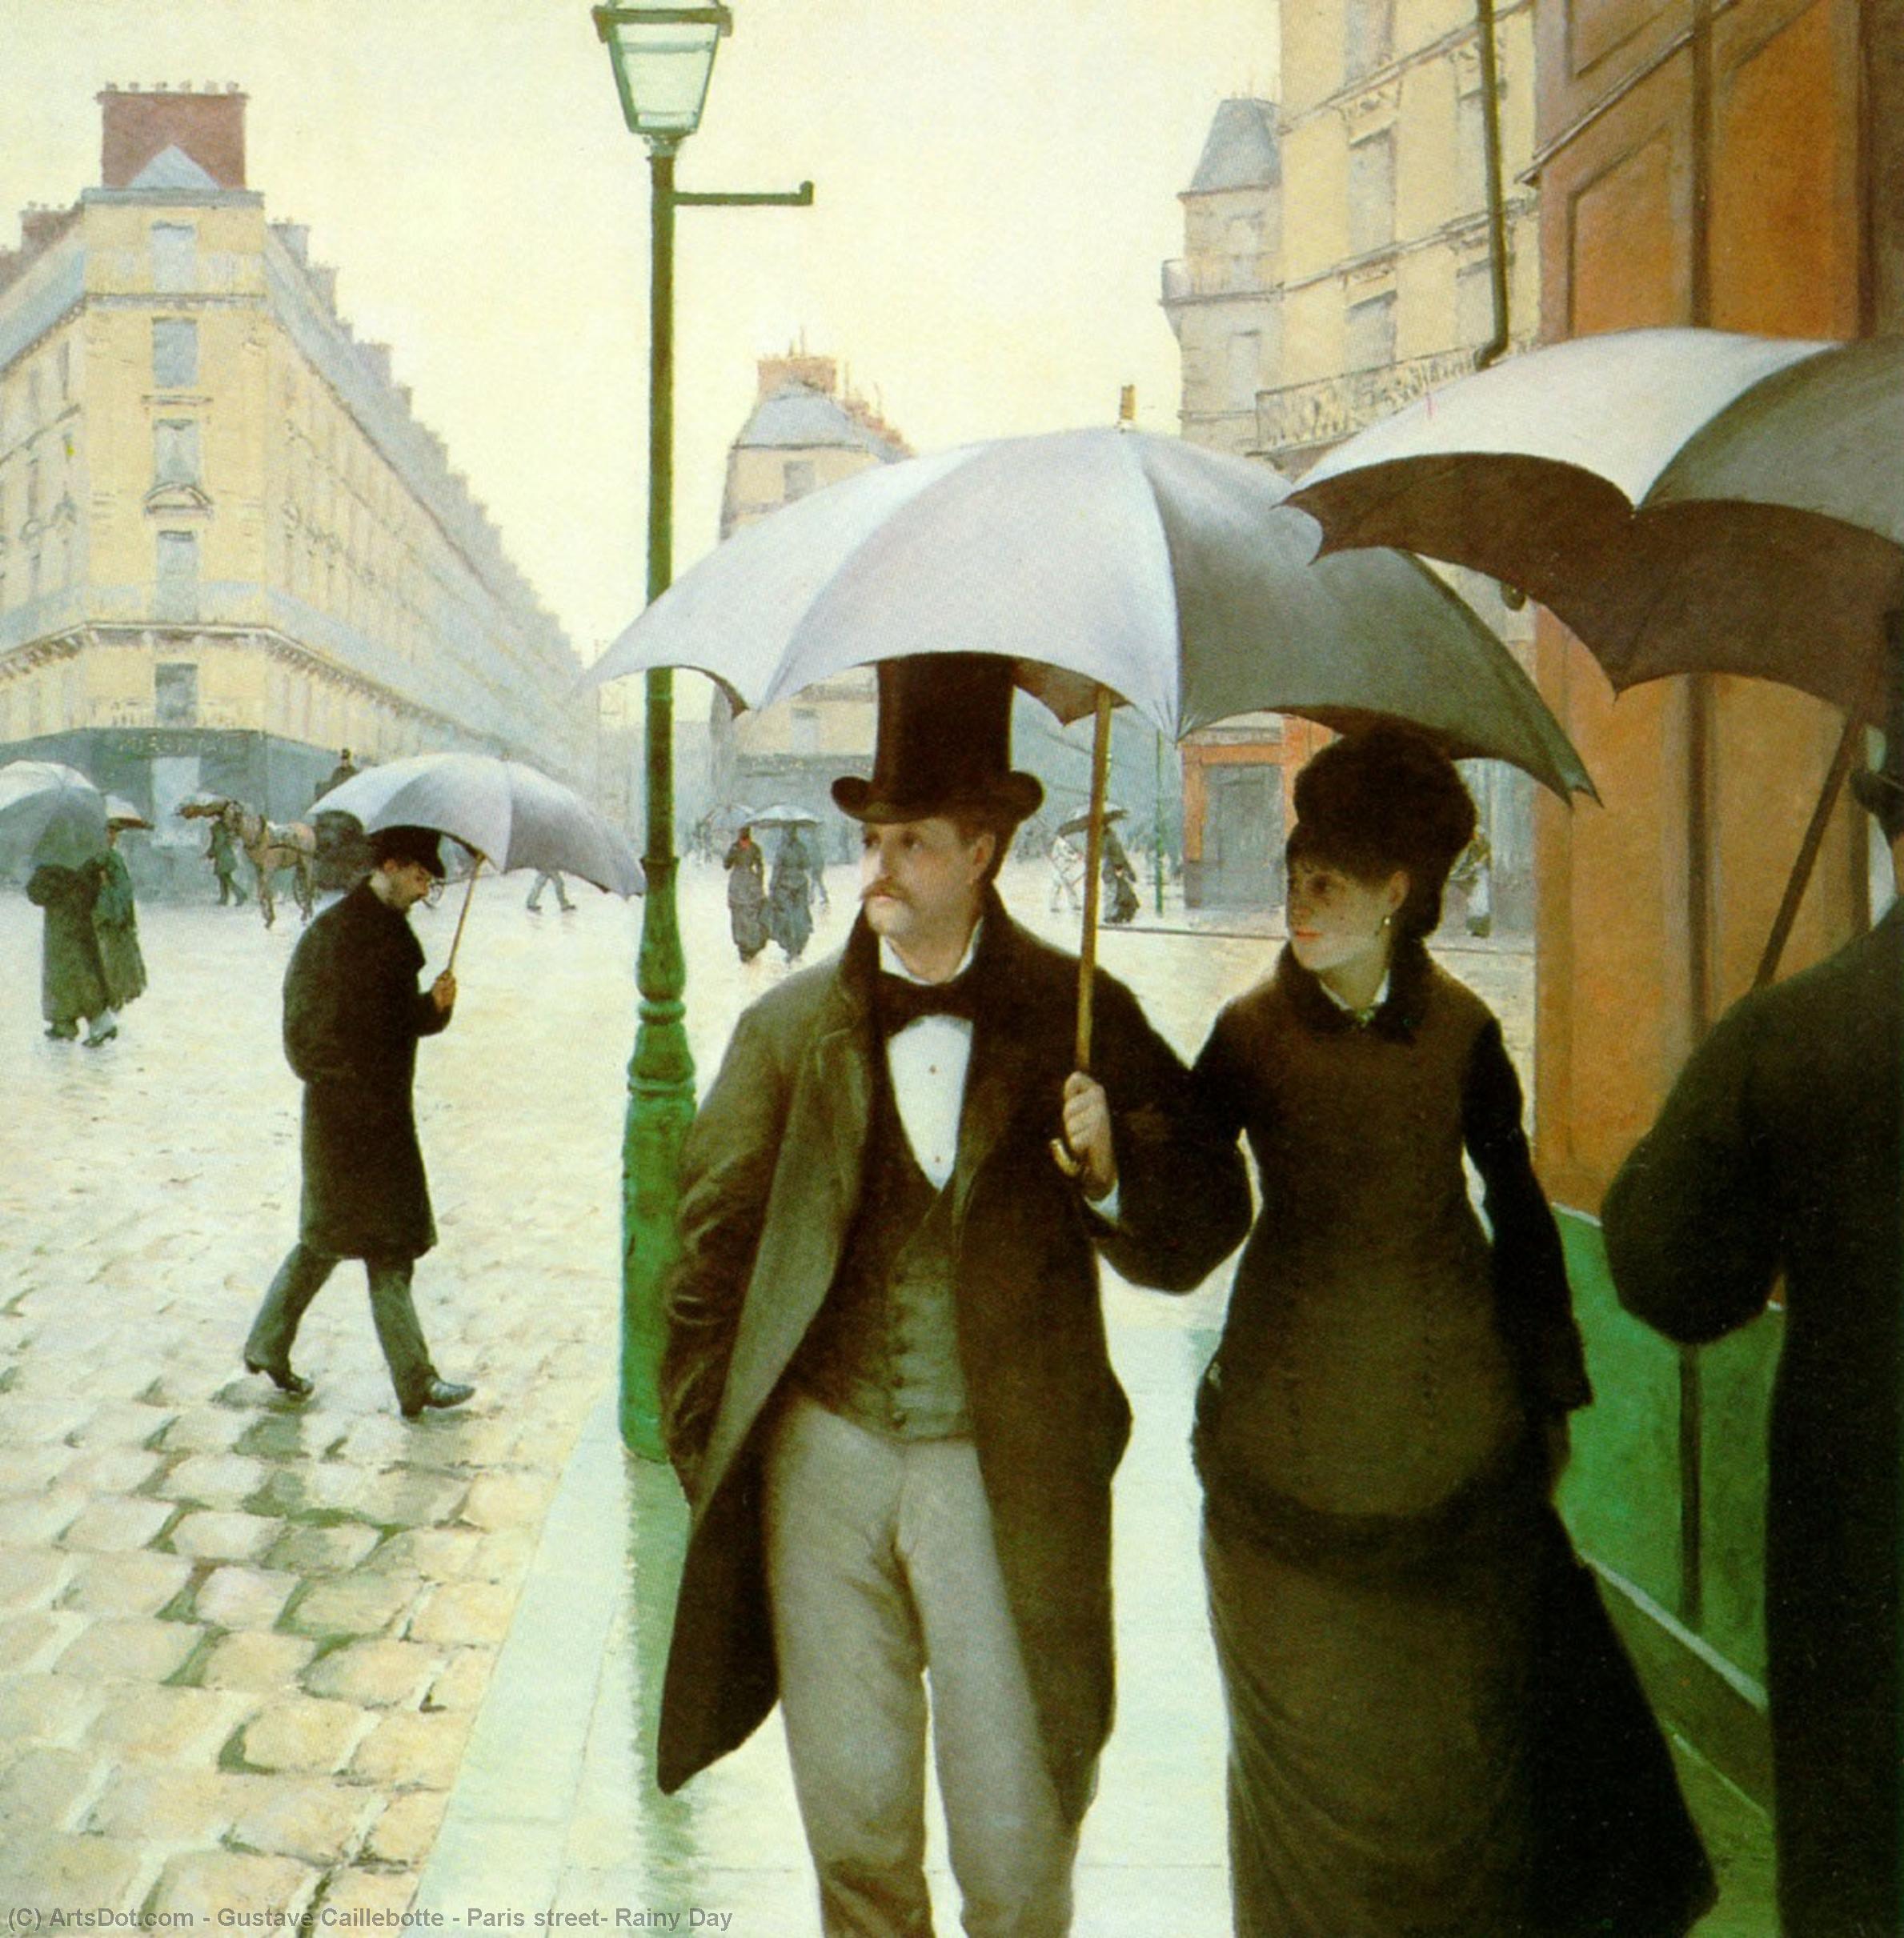 Compre Museu De Reproduções De Arte Paris street, Rainy Day, 1877 por Gustave Caillebotte (1848-1894, France) | ArtsDot.com